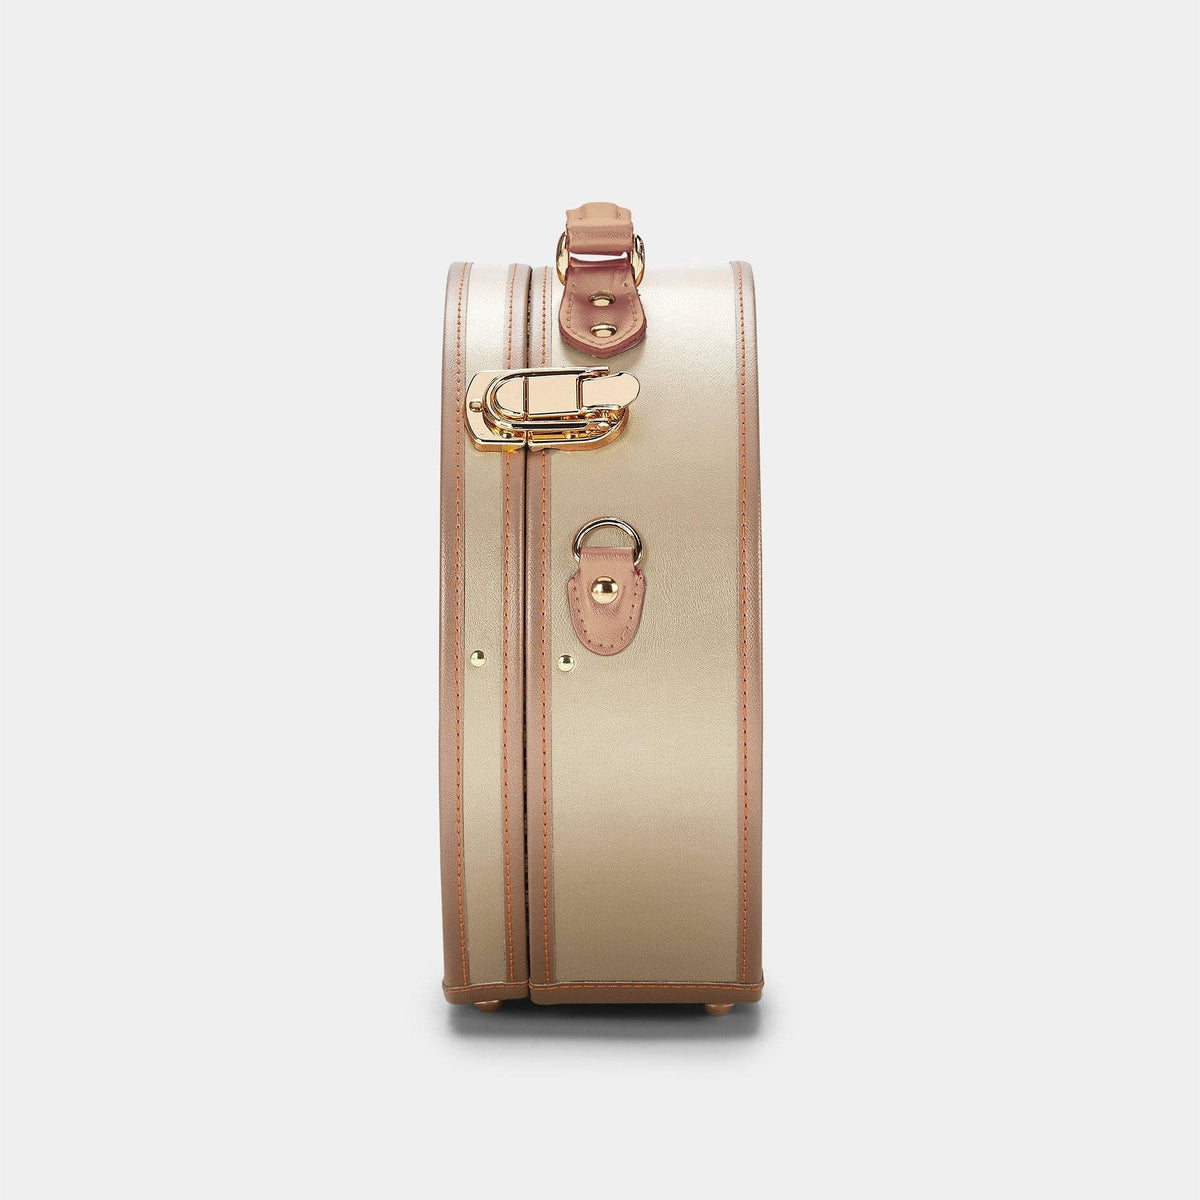 The Deluxe Alchemist Hatbox  Round Vintage Suitcase & Hat Box Luggage –  Steamline Luggage